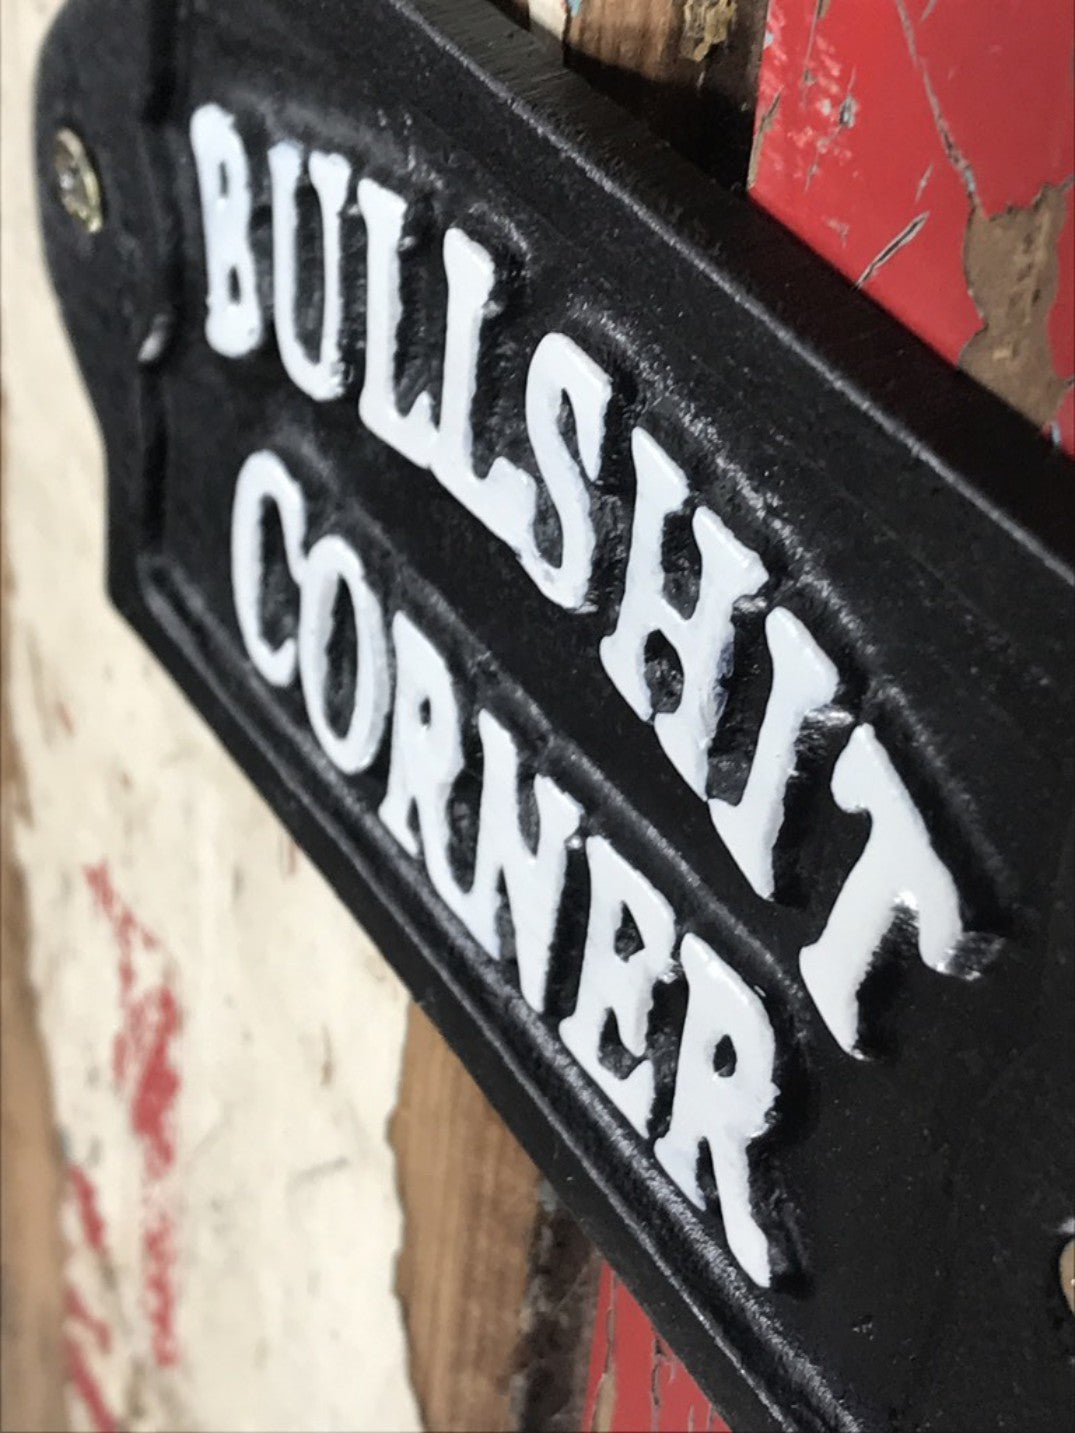 Funny Rude Black & White Wall Sign Cast Iron “BULLSH T CORNER”